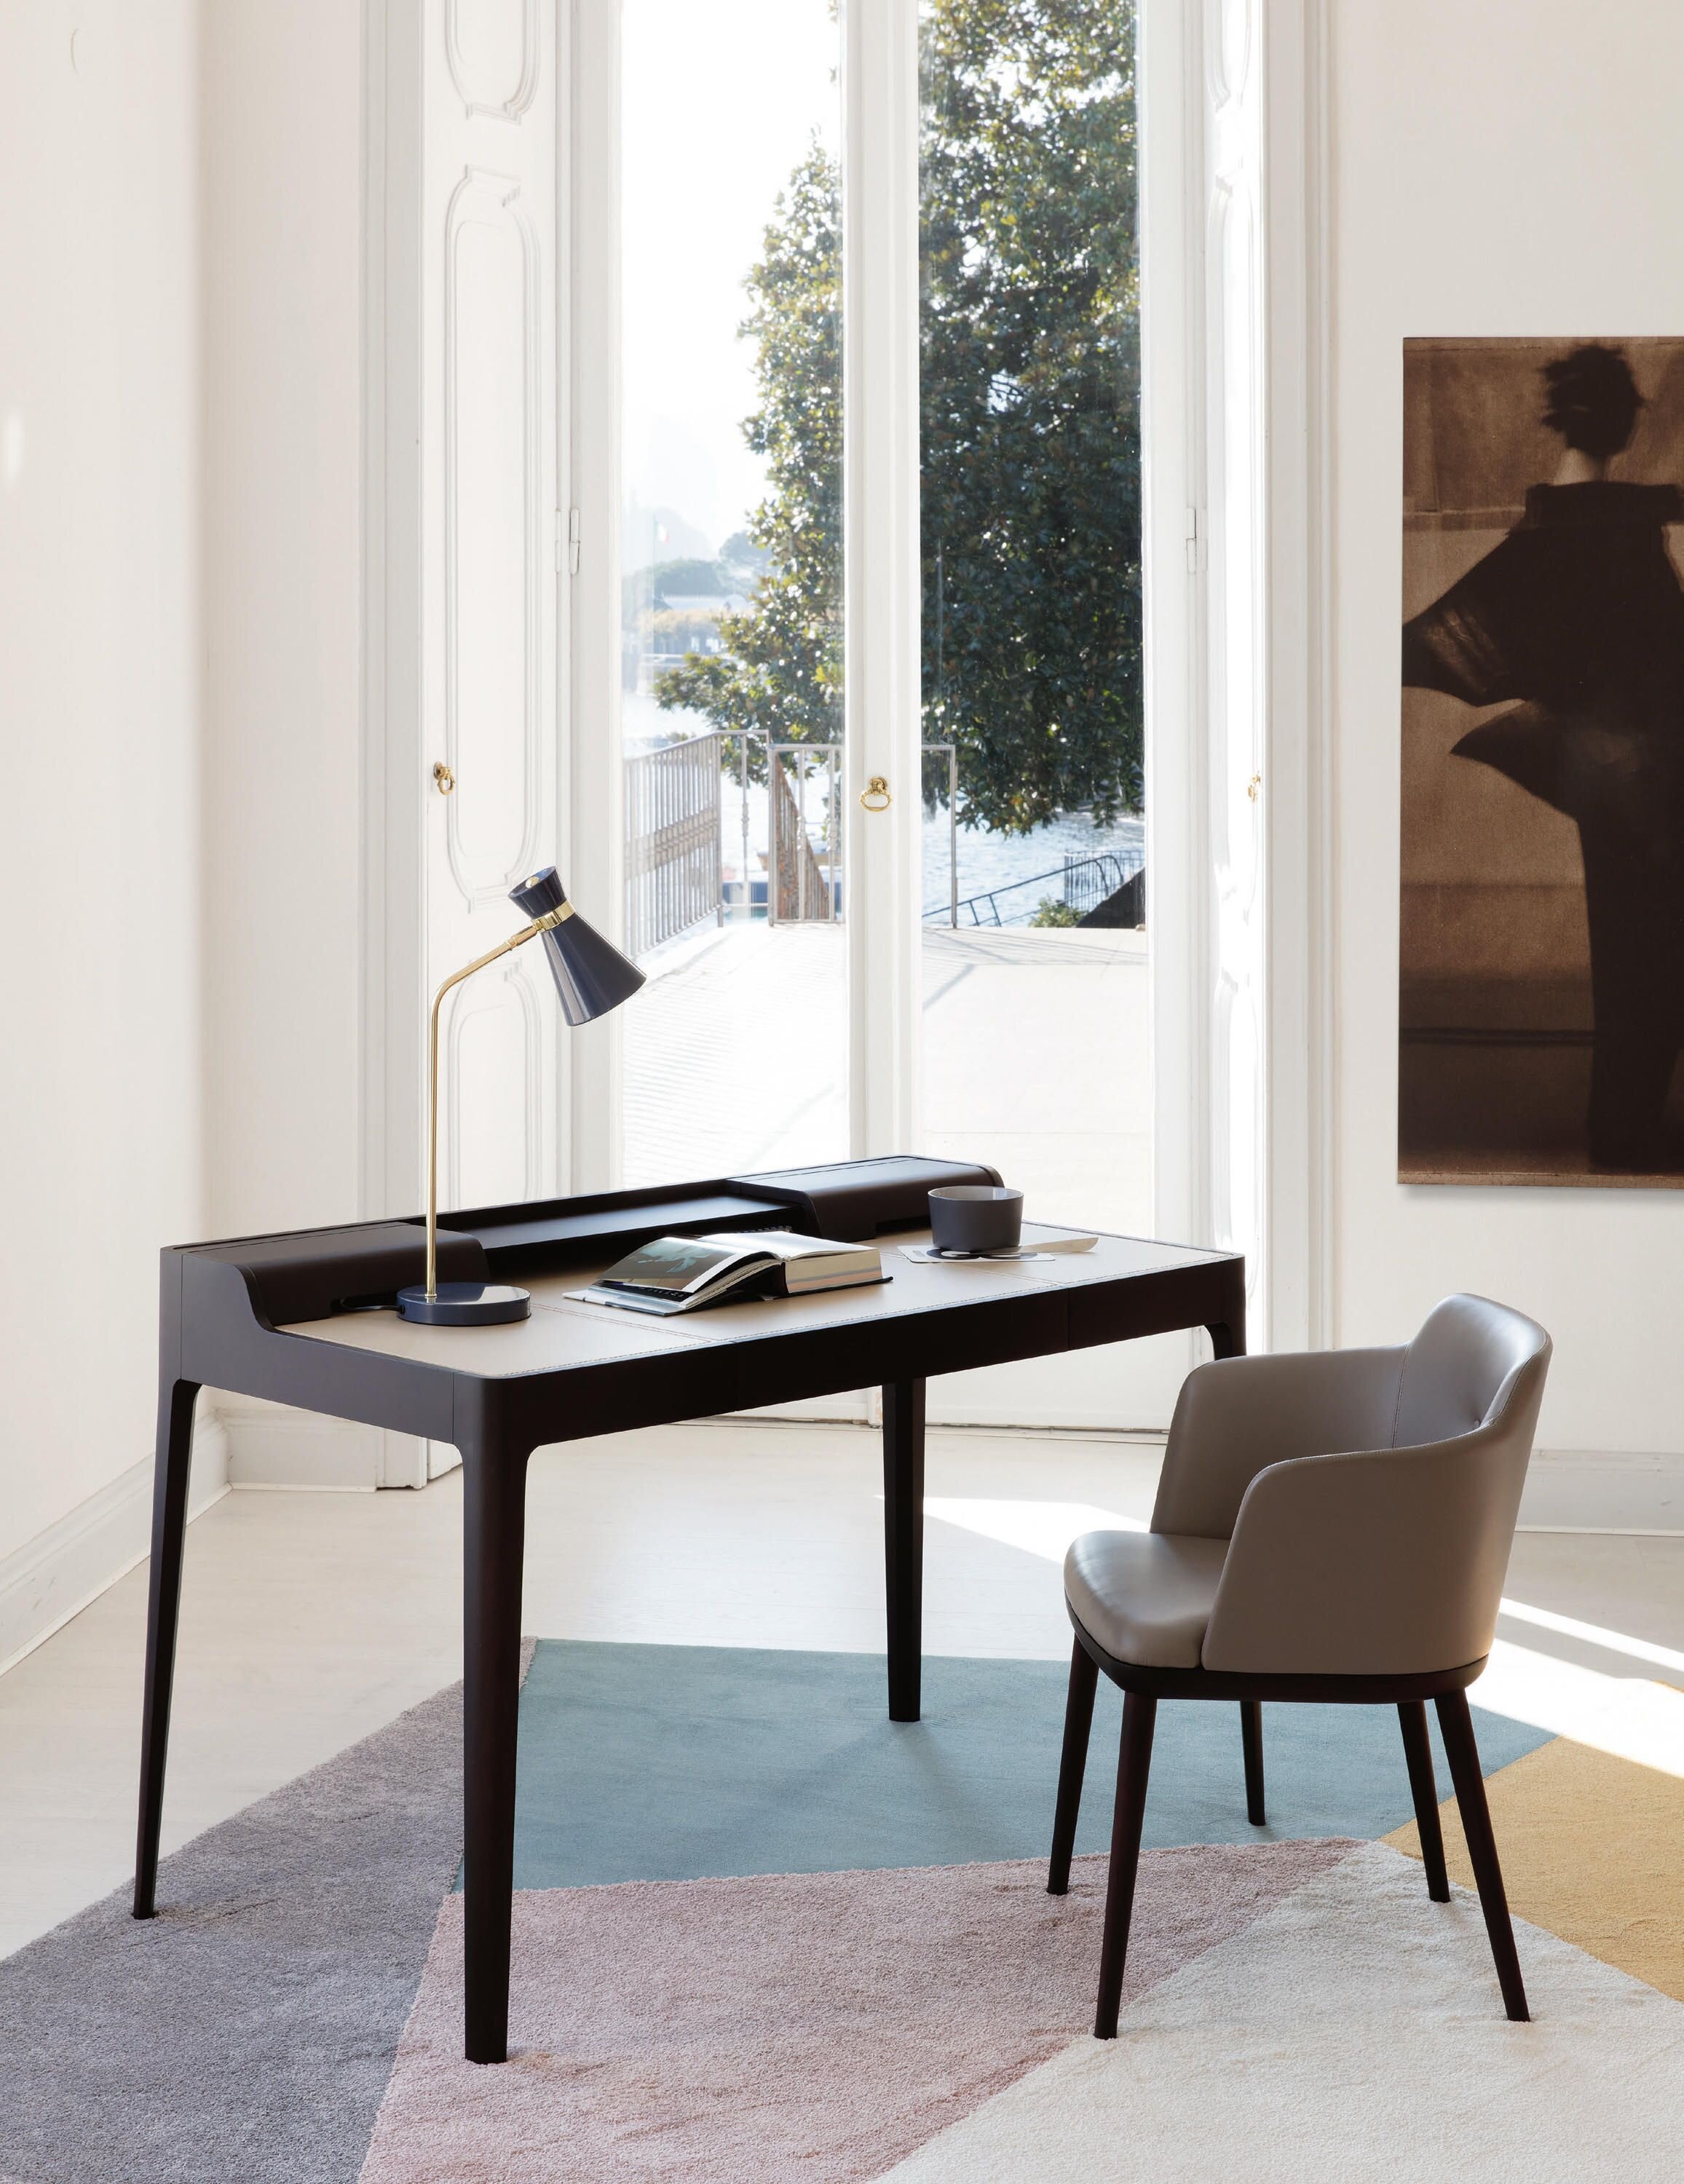 Saffo cuoio & muebles de diseño _ Architonic.jpg